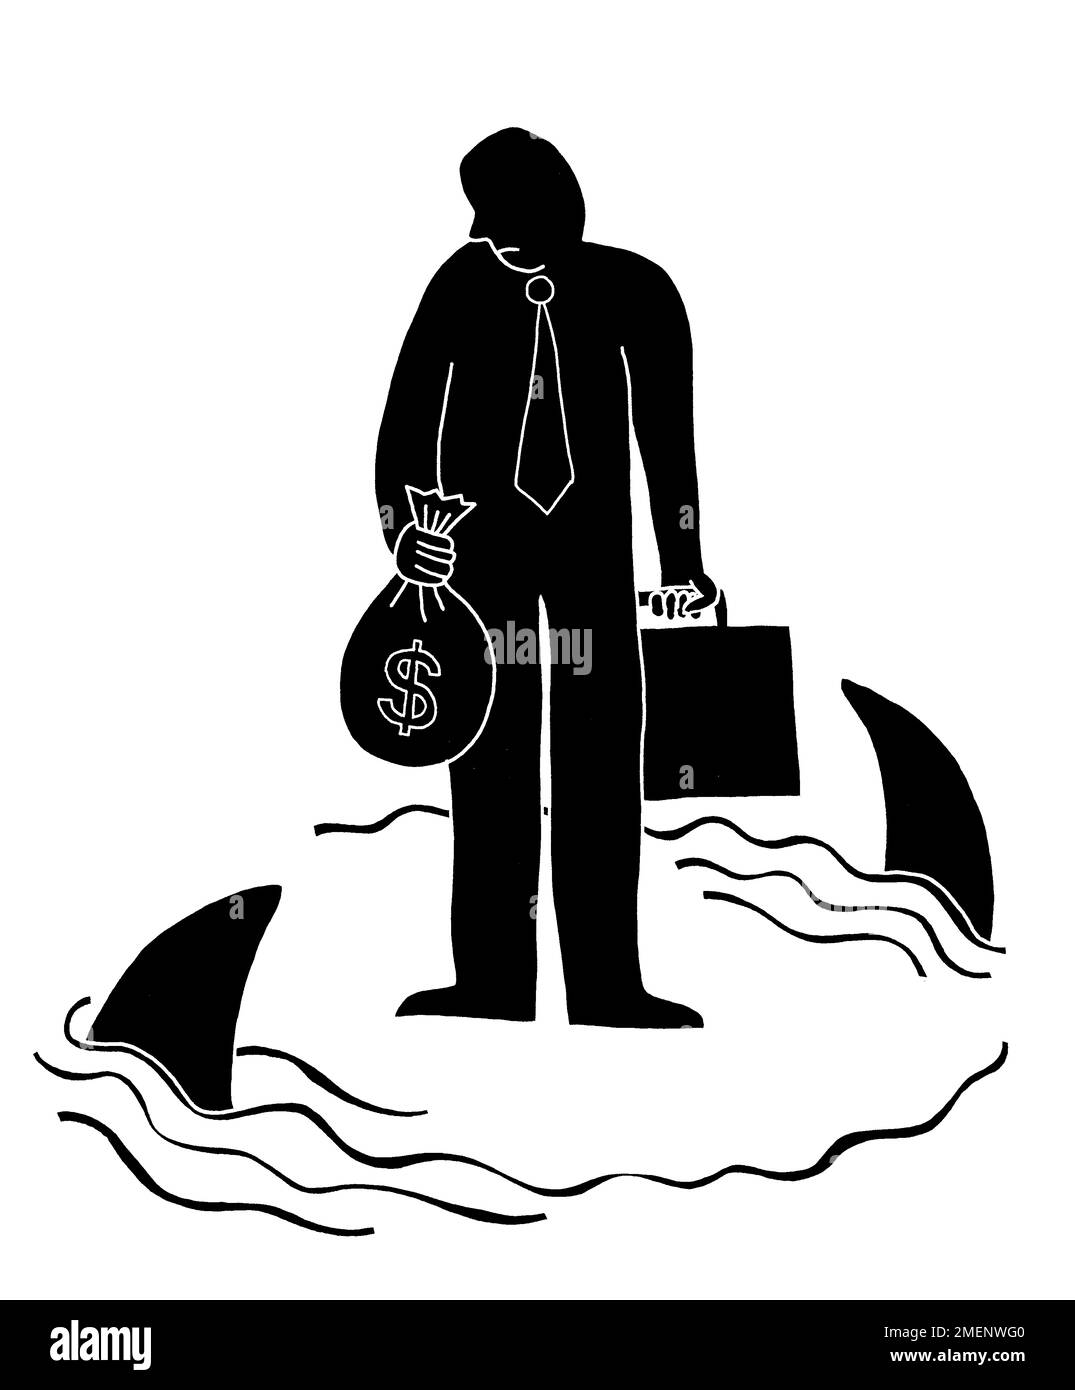 Illustrazione in bianco e nero dell'uomo che è circondato dagli squali mentre tiene una valigetta e una borsa di soldi Foto Stock